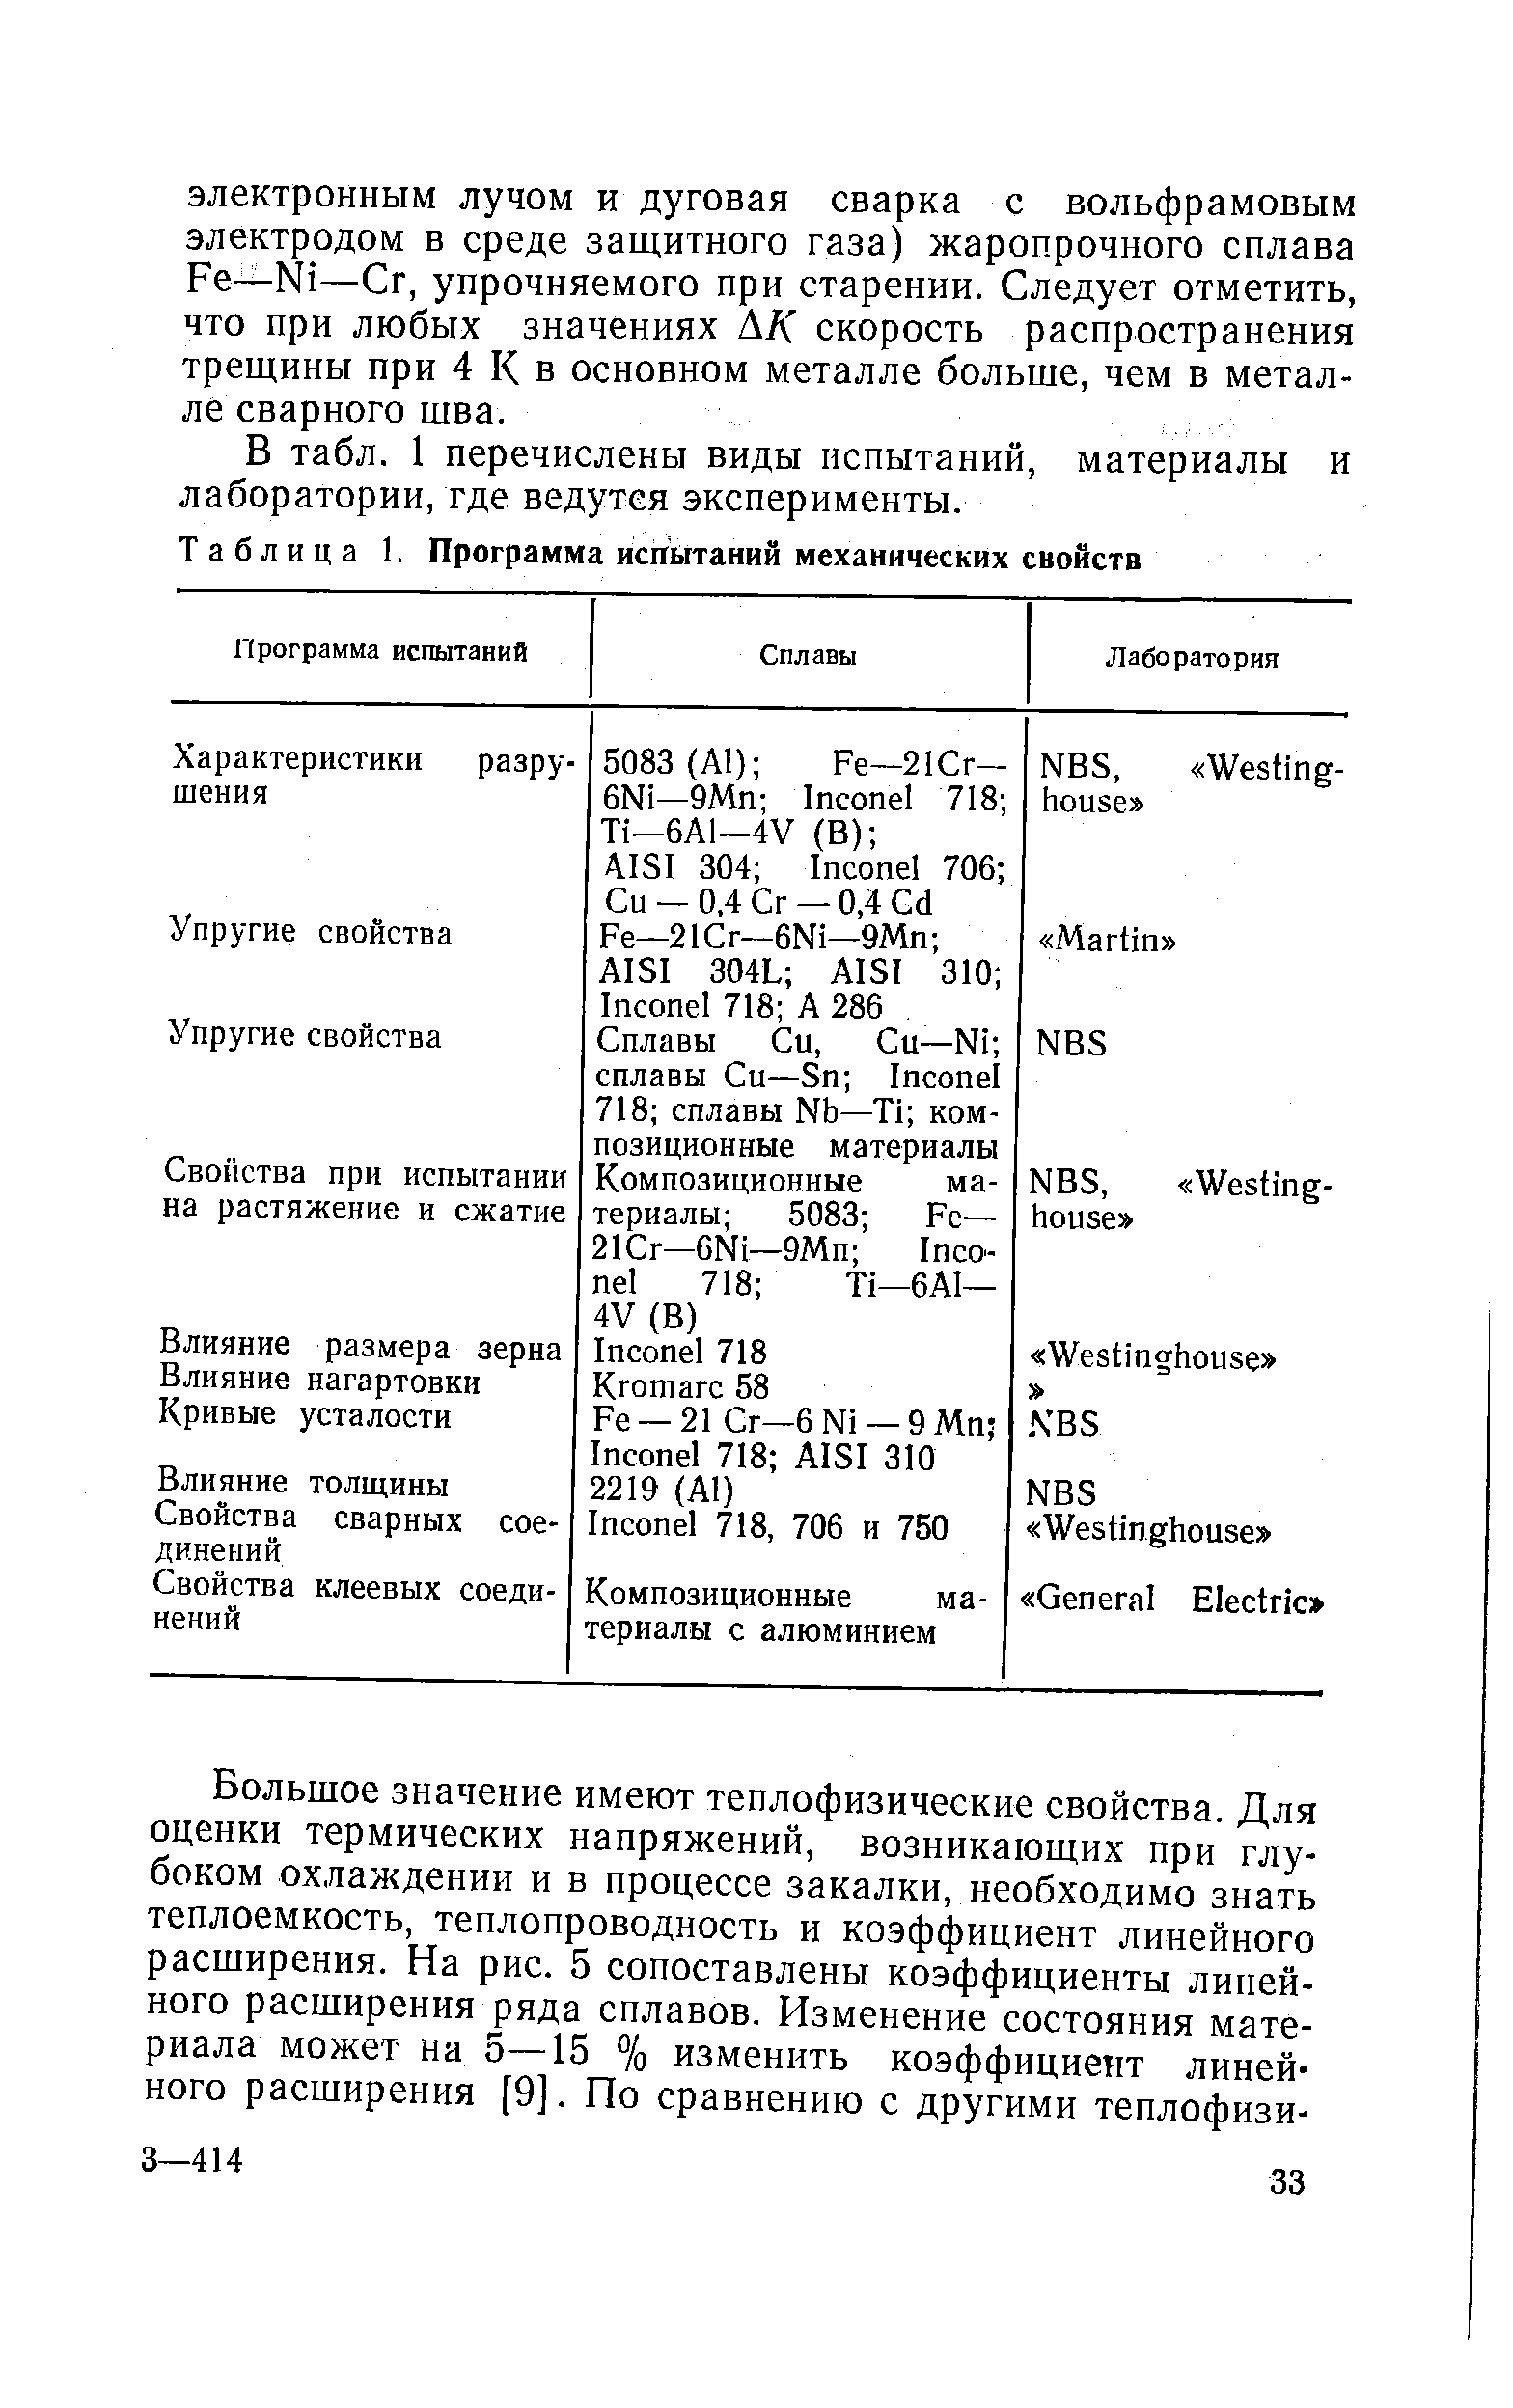 Таблица 1. Программа испытаний механических свойств
